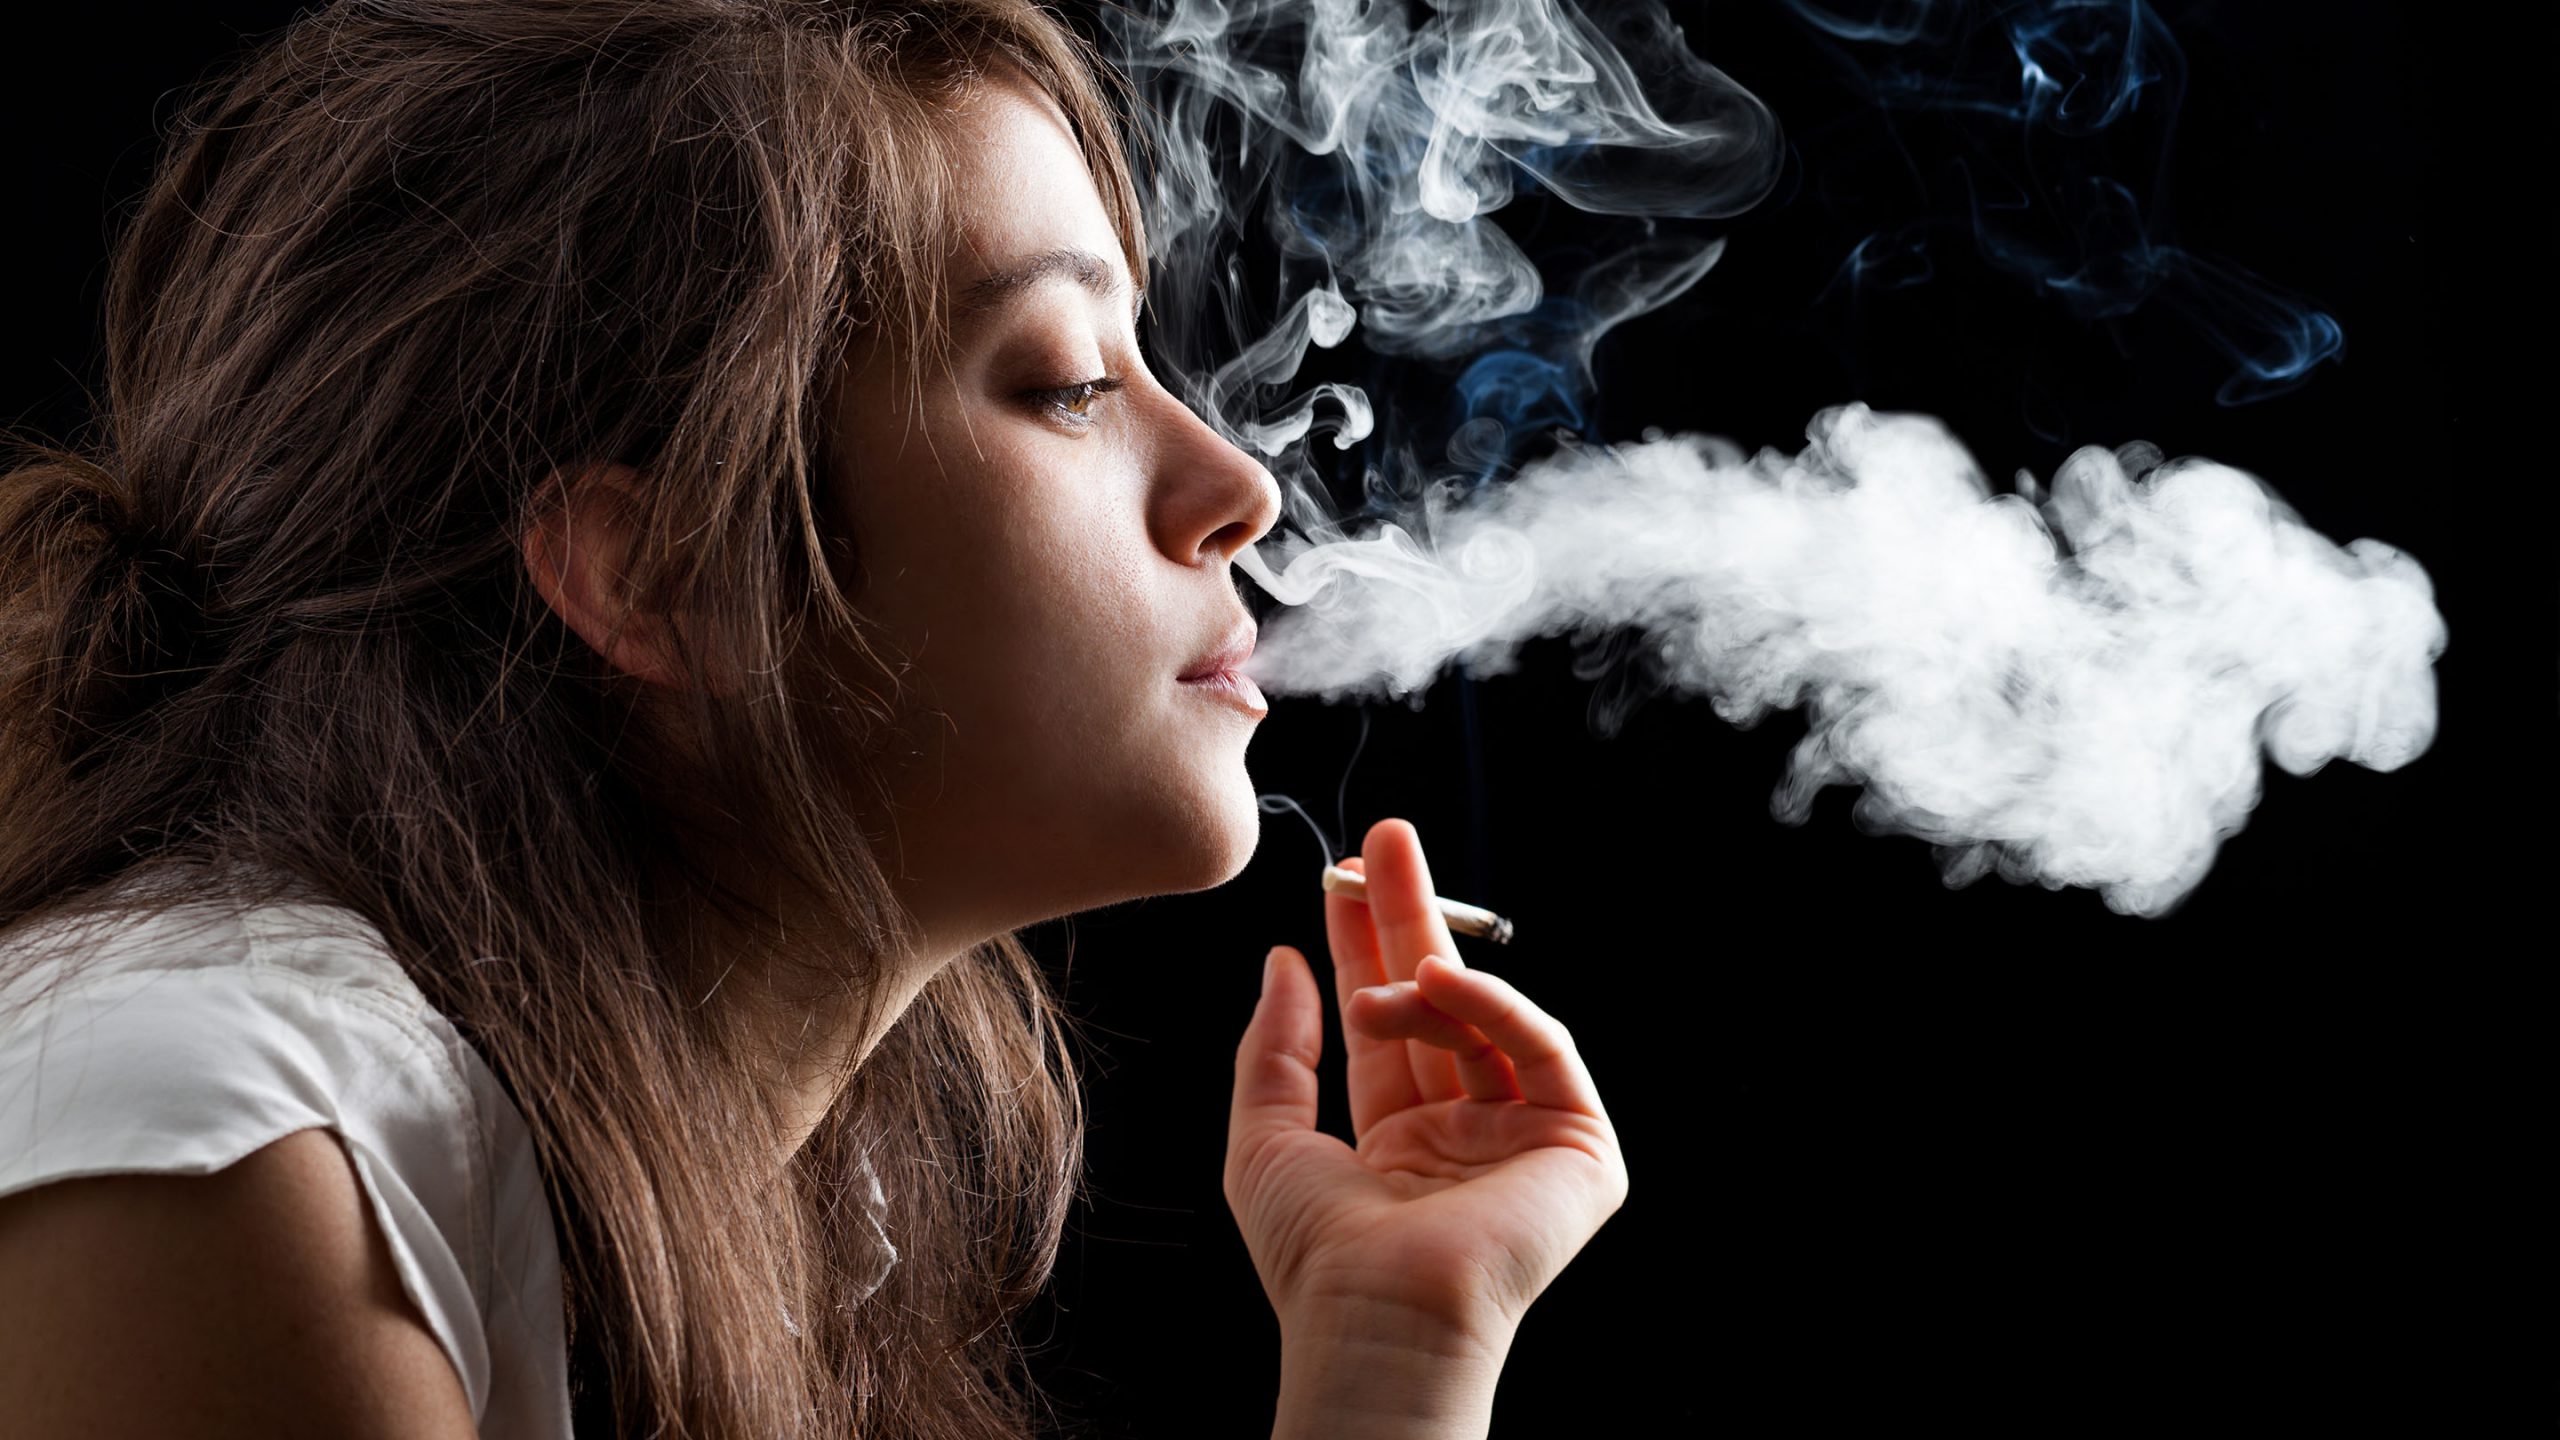 Interactie Moet Knuppel Stoppen met roken op elke leeftijd zinvol - gezondnu